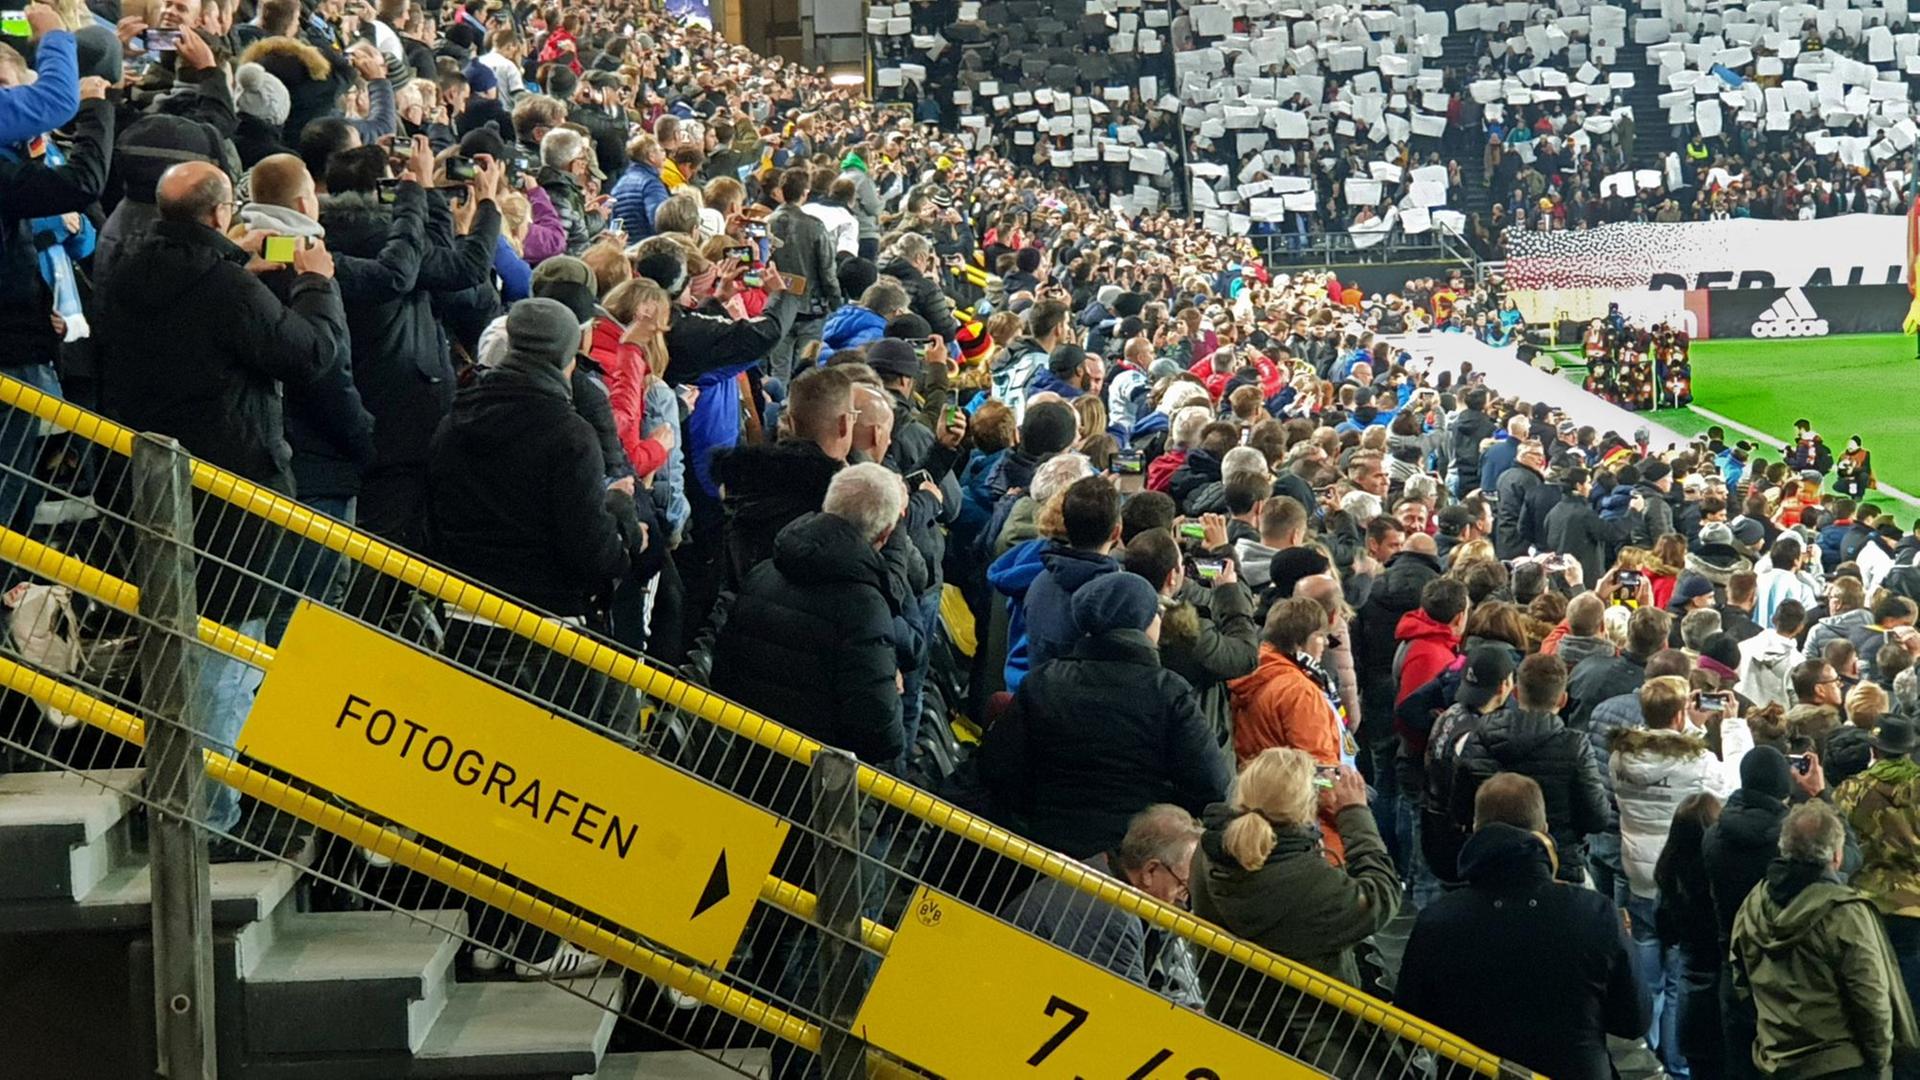 Viele Zuschauer stehen in einem Stadion und gucken Fußball.